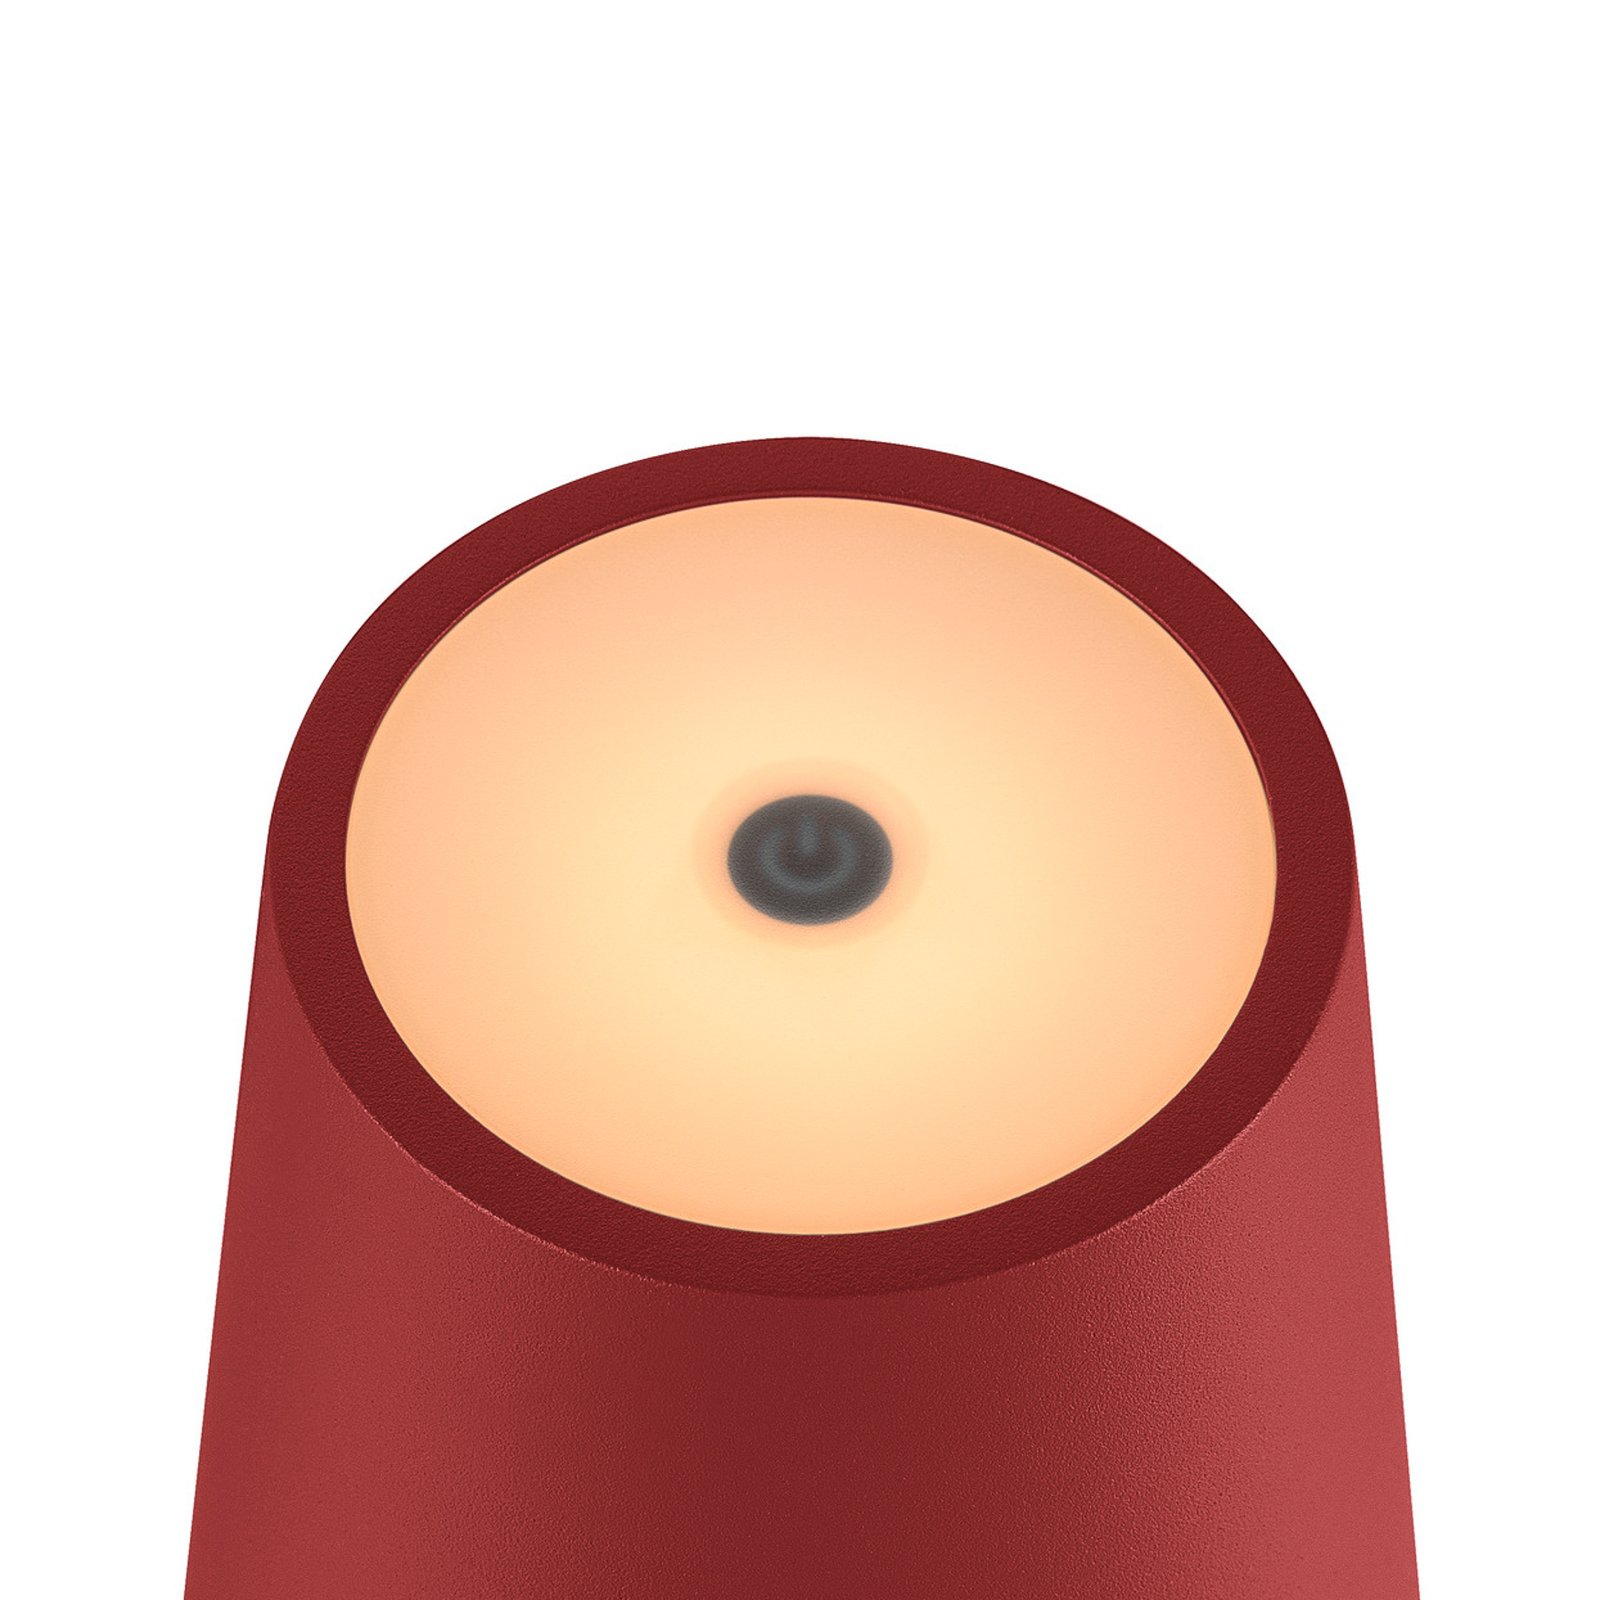 SLV Lampada ricaricabile a LED Vinolina Two, rossa, alluminio, Ø 11 cm,